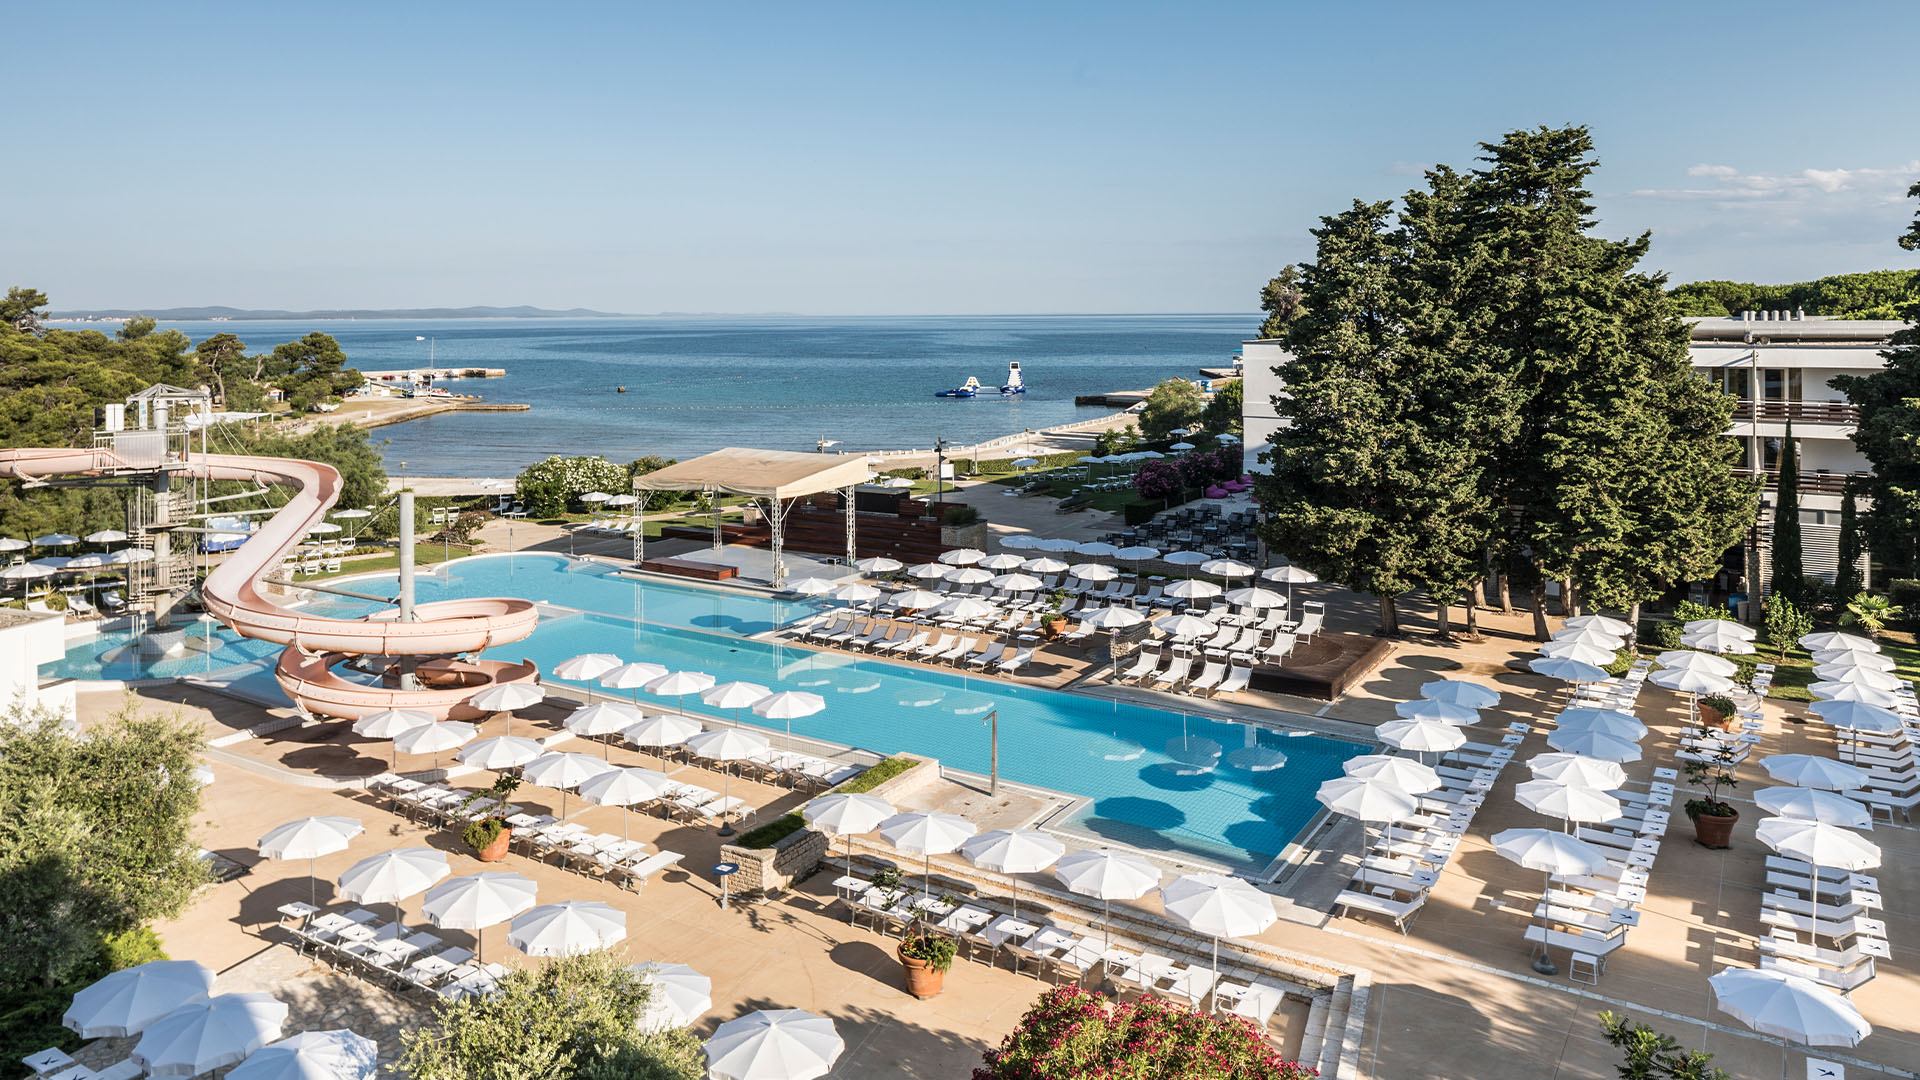 Kroatien Hotel Am Meer All Inclusive : Die schönsten 5 Sterne Hotels am